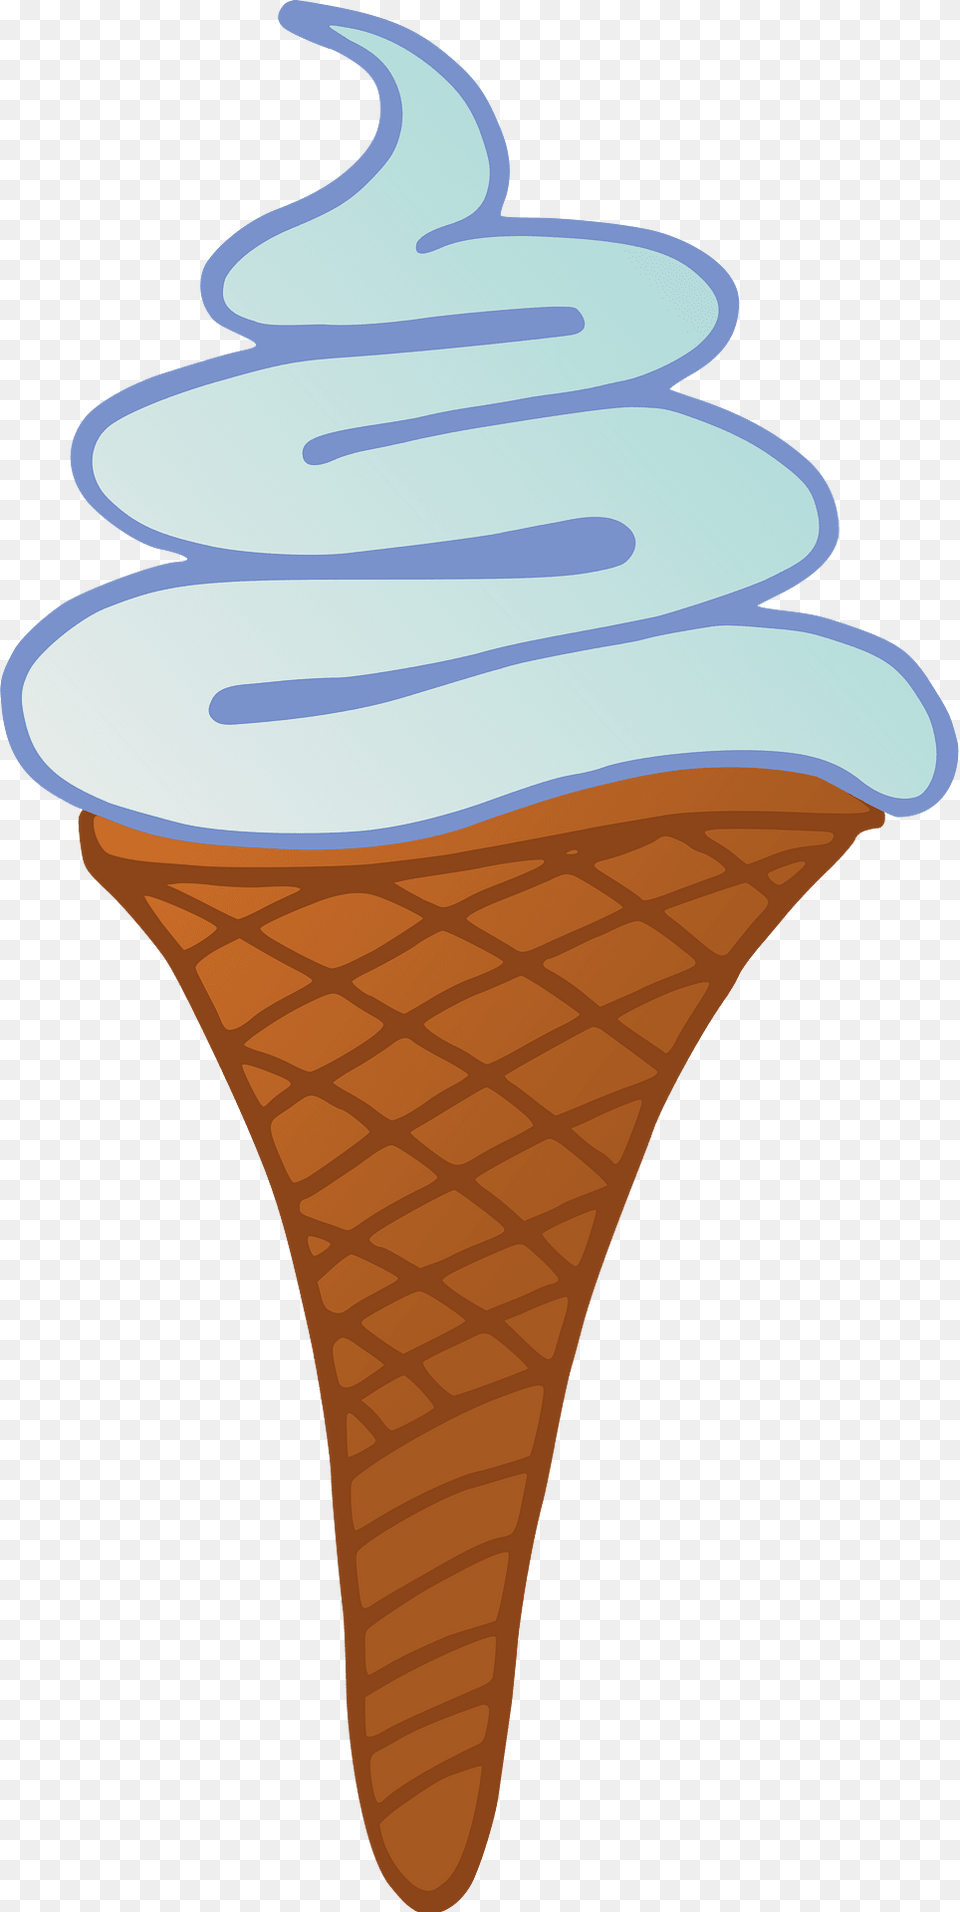 Ice Cream Cone Clipart, Dessert, Food, Ice Cream, Soft Serve Ice Cream Png